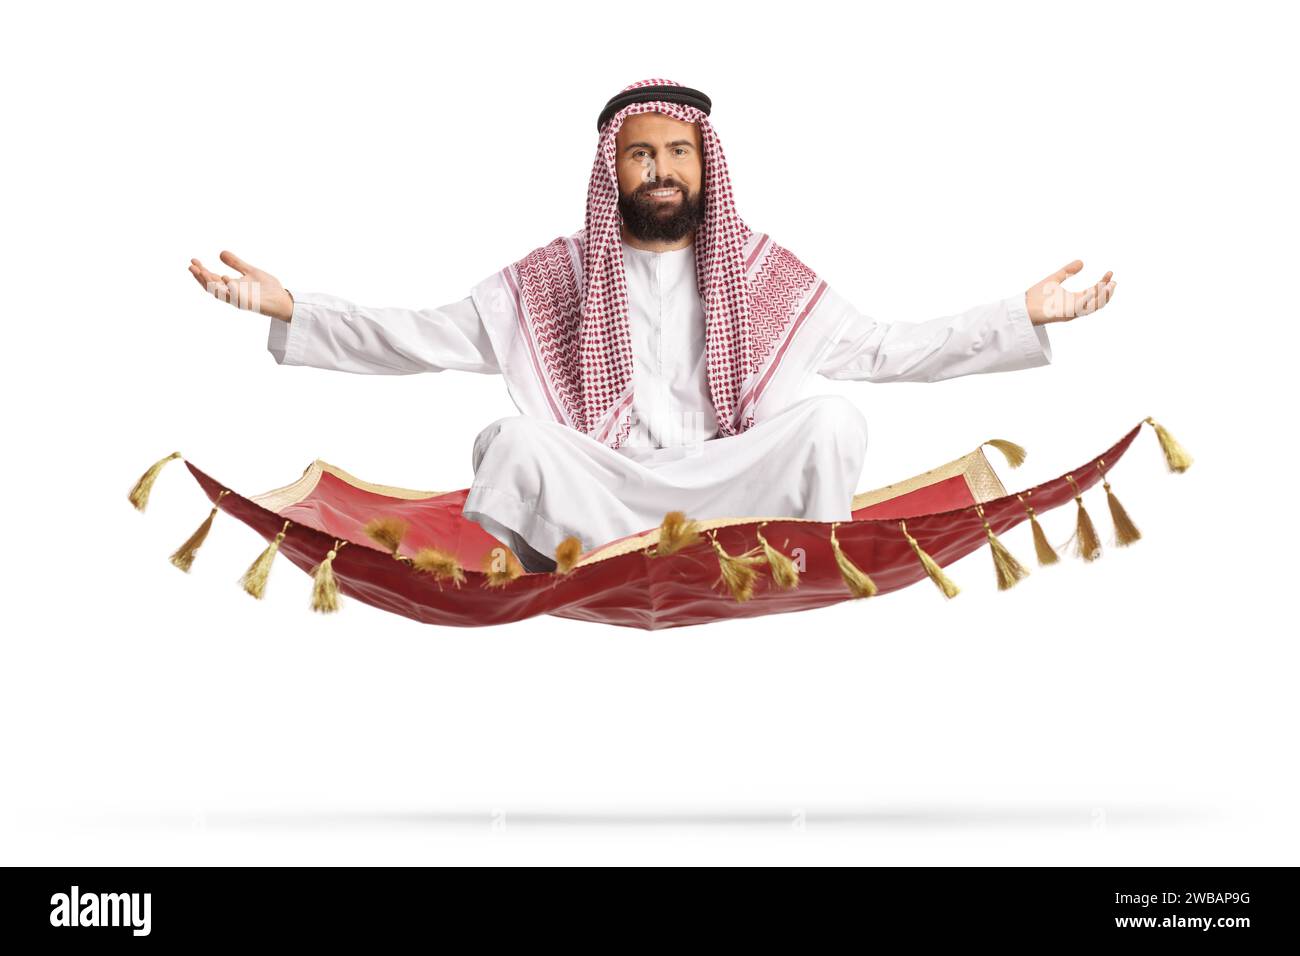 Saudi arab man floating on a magic carpet isolated on white background Stock Photo